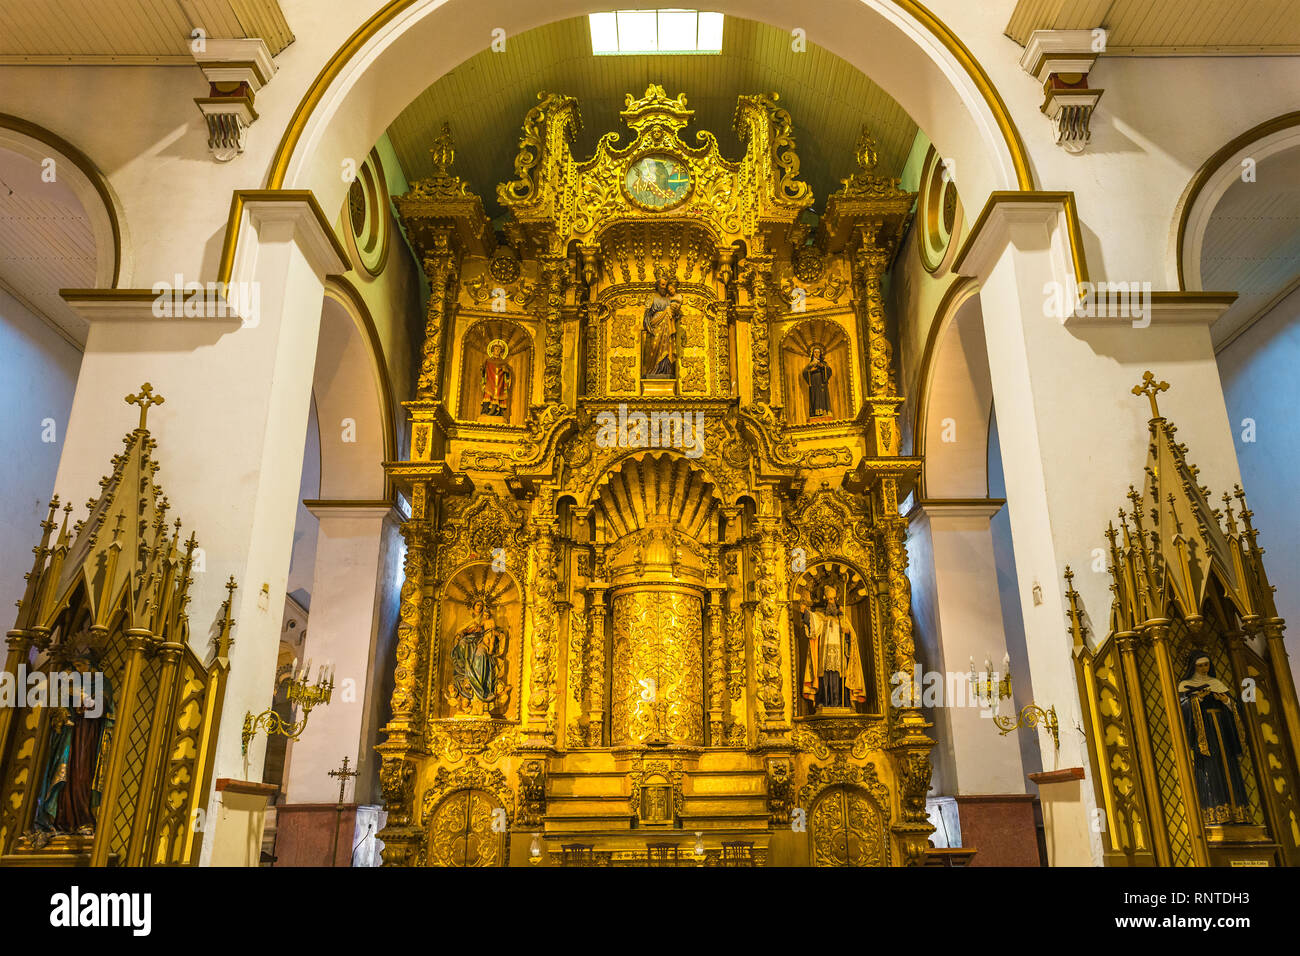 Der Hauptaltar der San Jose Kirche im barocken Stil mit Blattgold und religiöse Statuen geschmückt, Panama City, Panama. Stockfoto